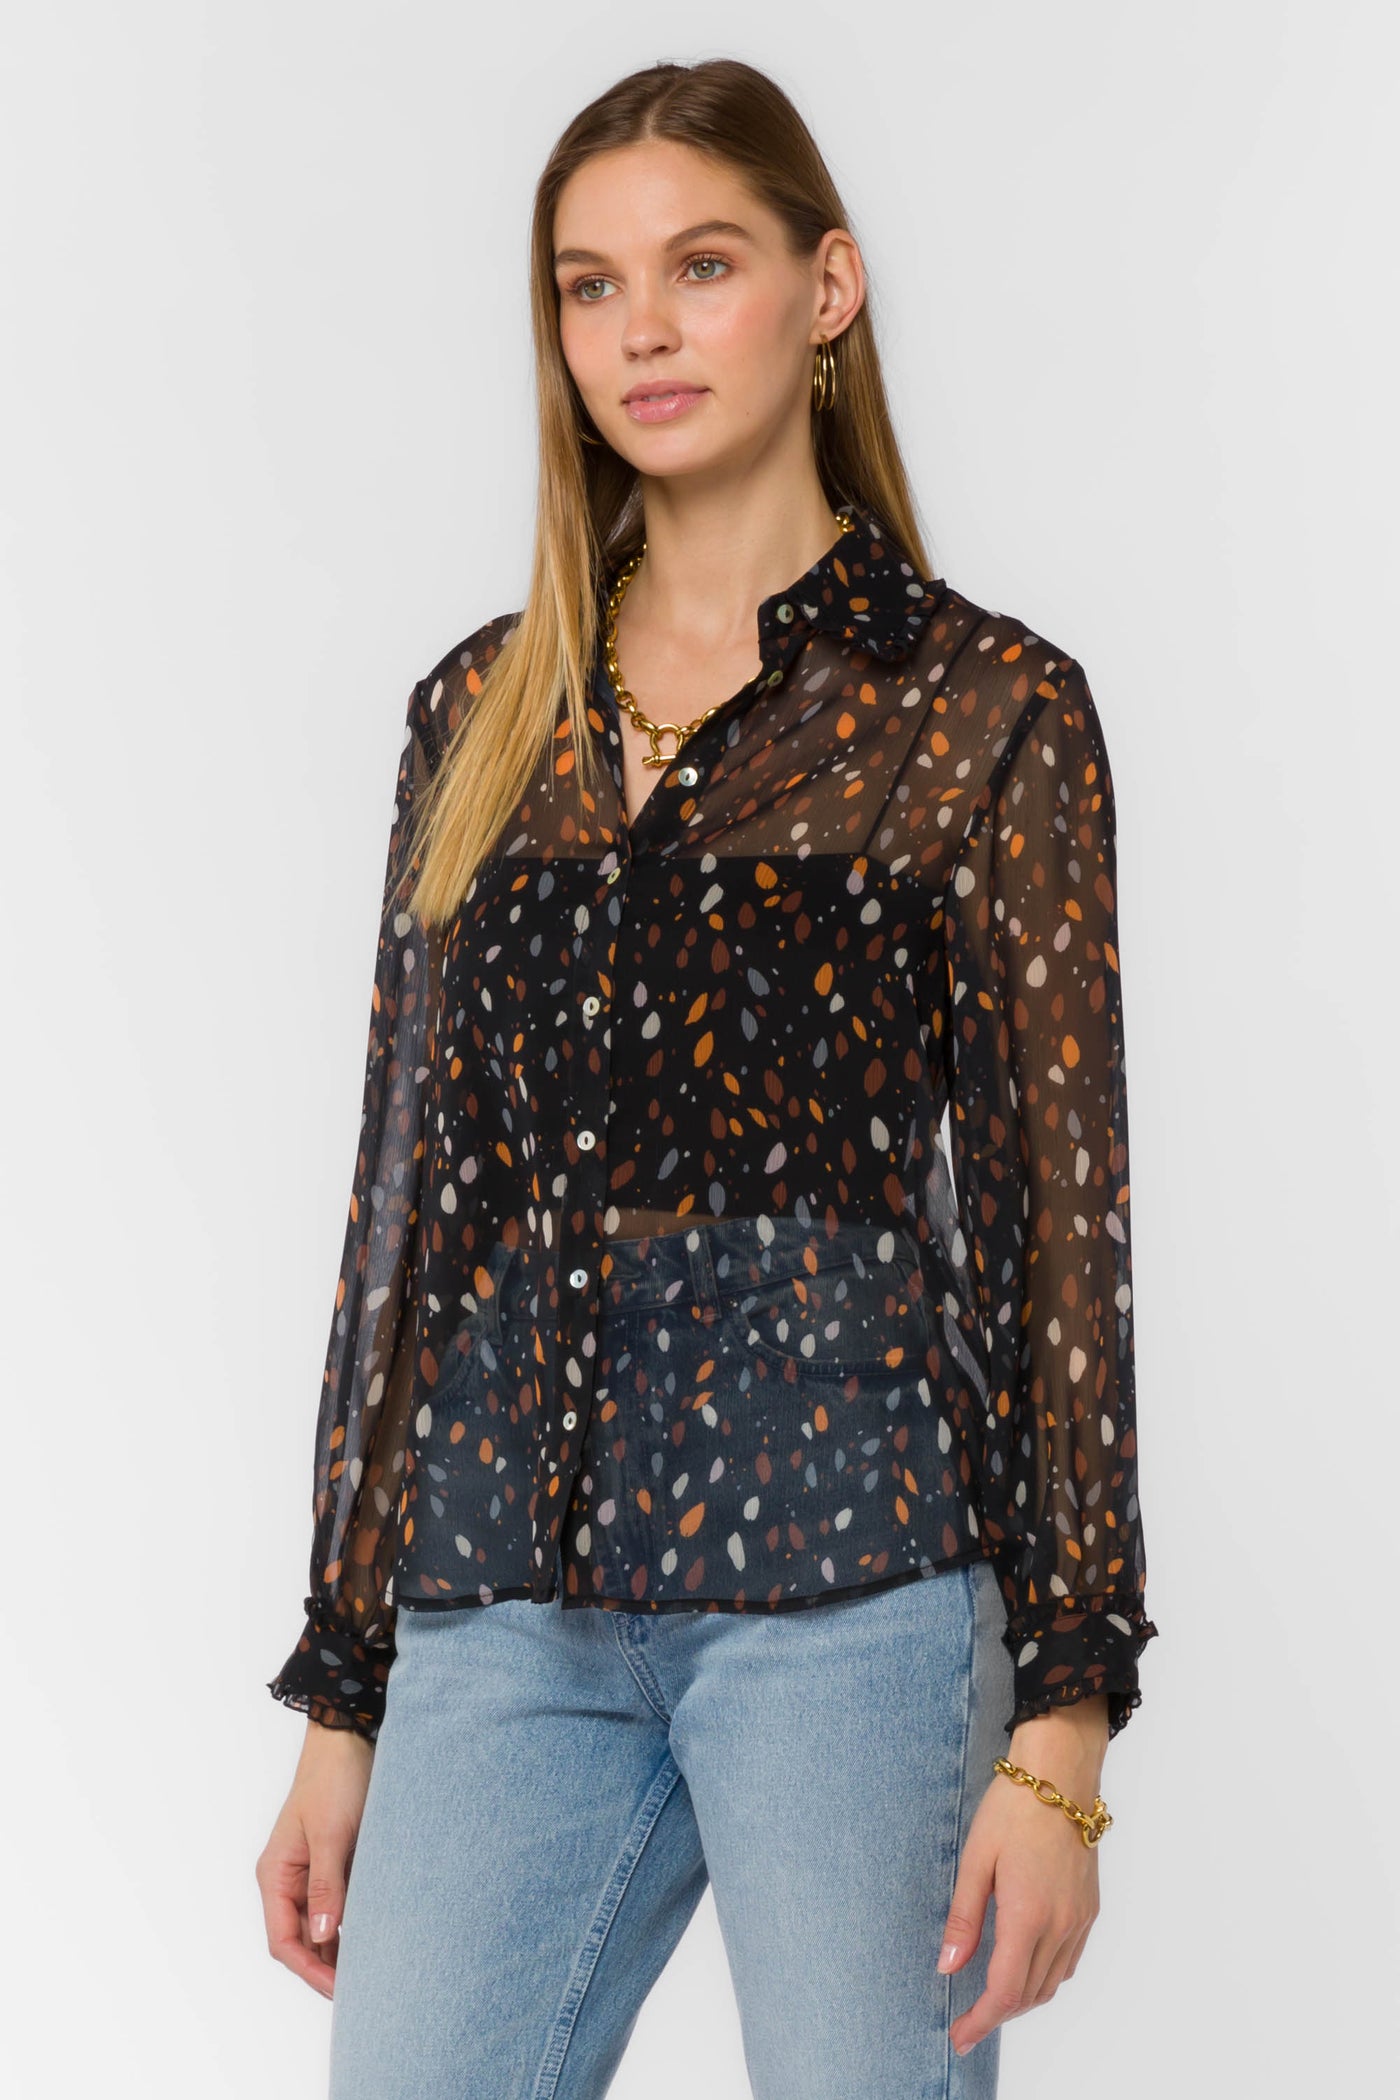 Theona Black Dots Shirt - Tops - Velvet Heart Clothing